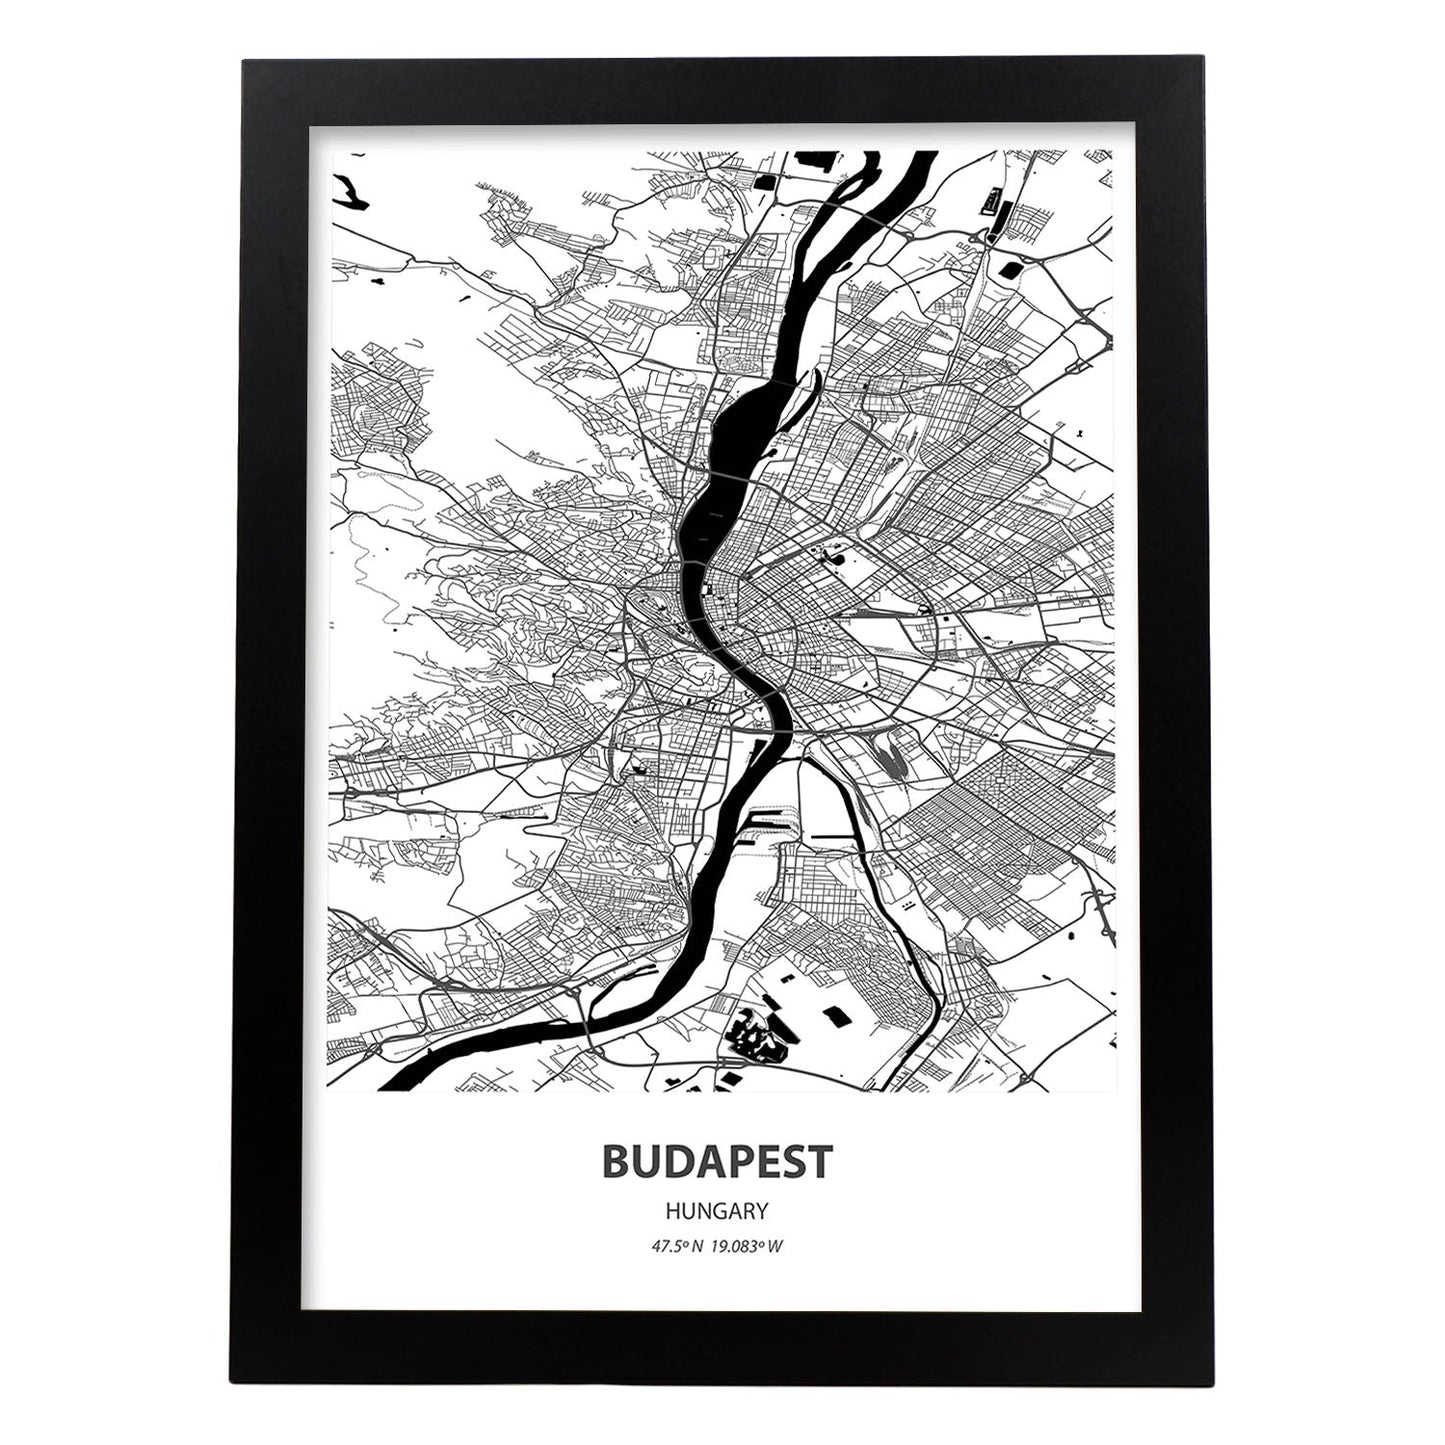 Poster con mapa de Budapest - Hungria. Láminas de ciudades de Europa con mares y ríos en color negro.-Artwork-Nacnic-A3-Marco Negro-Nacnic Estudio SL